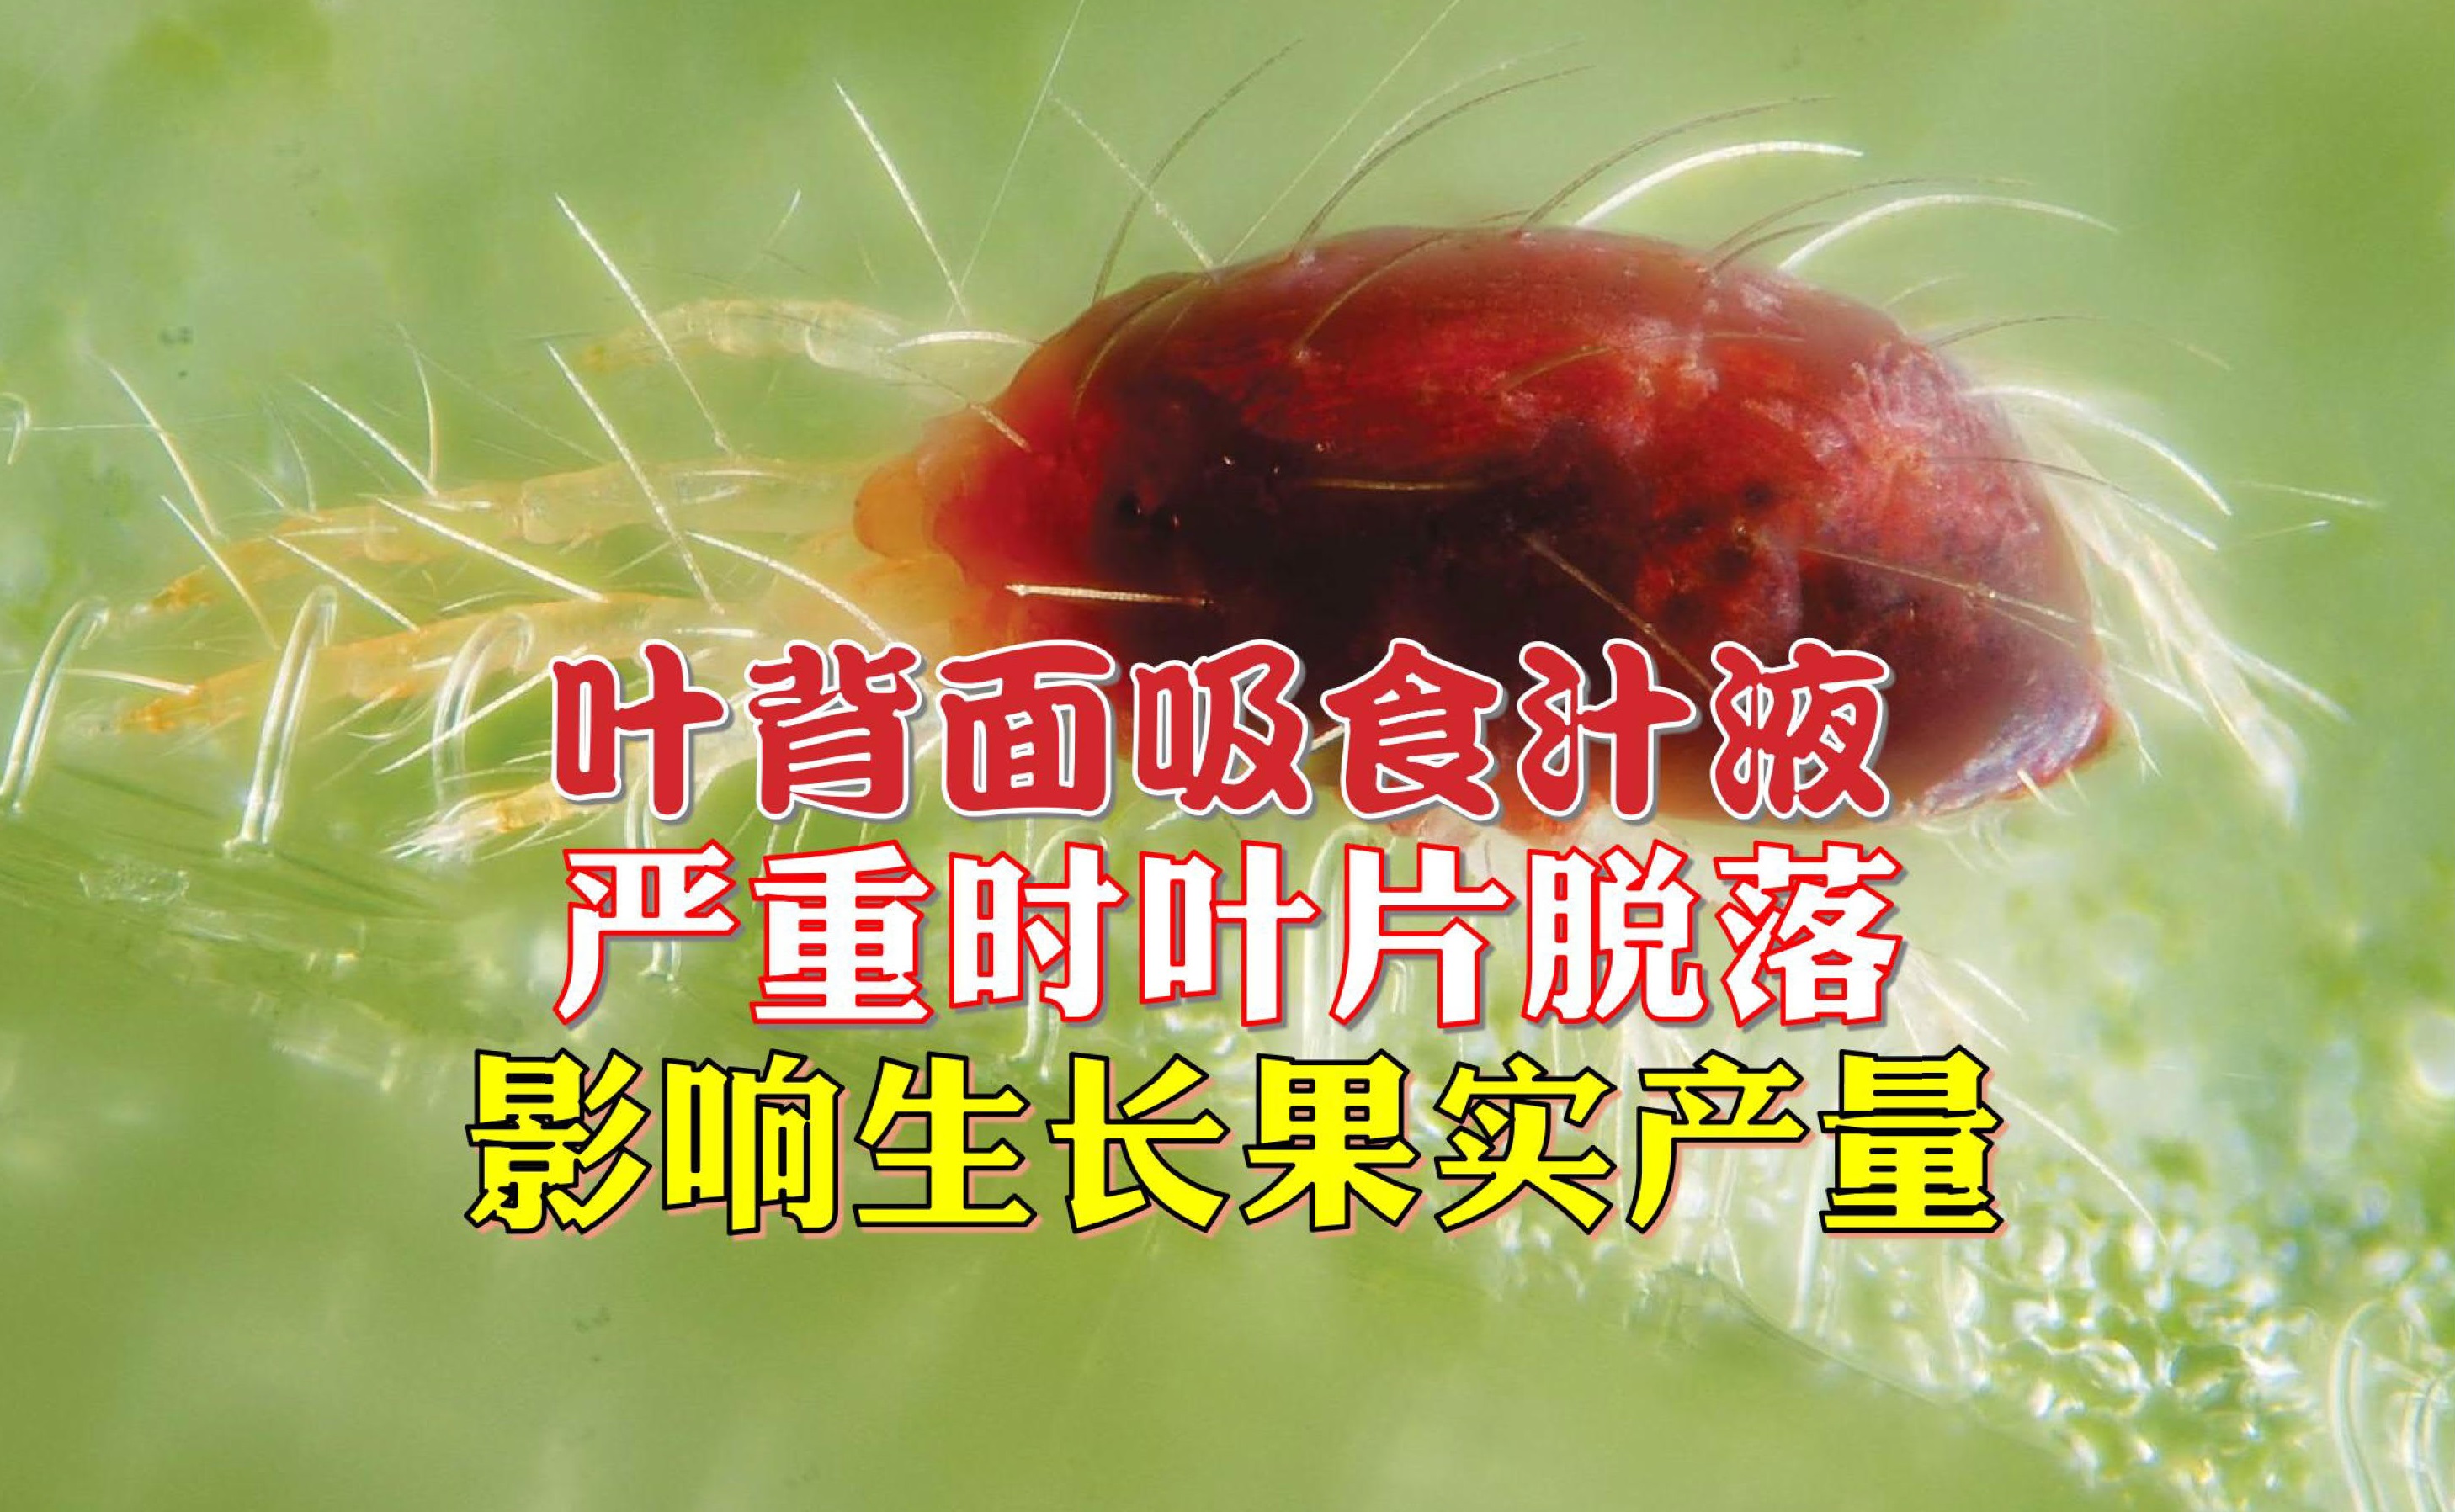 榴梿红蜘蛛的防治法 - 农牧世界